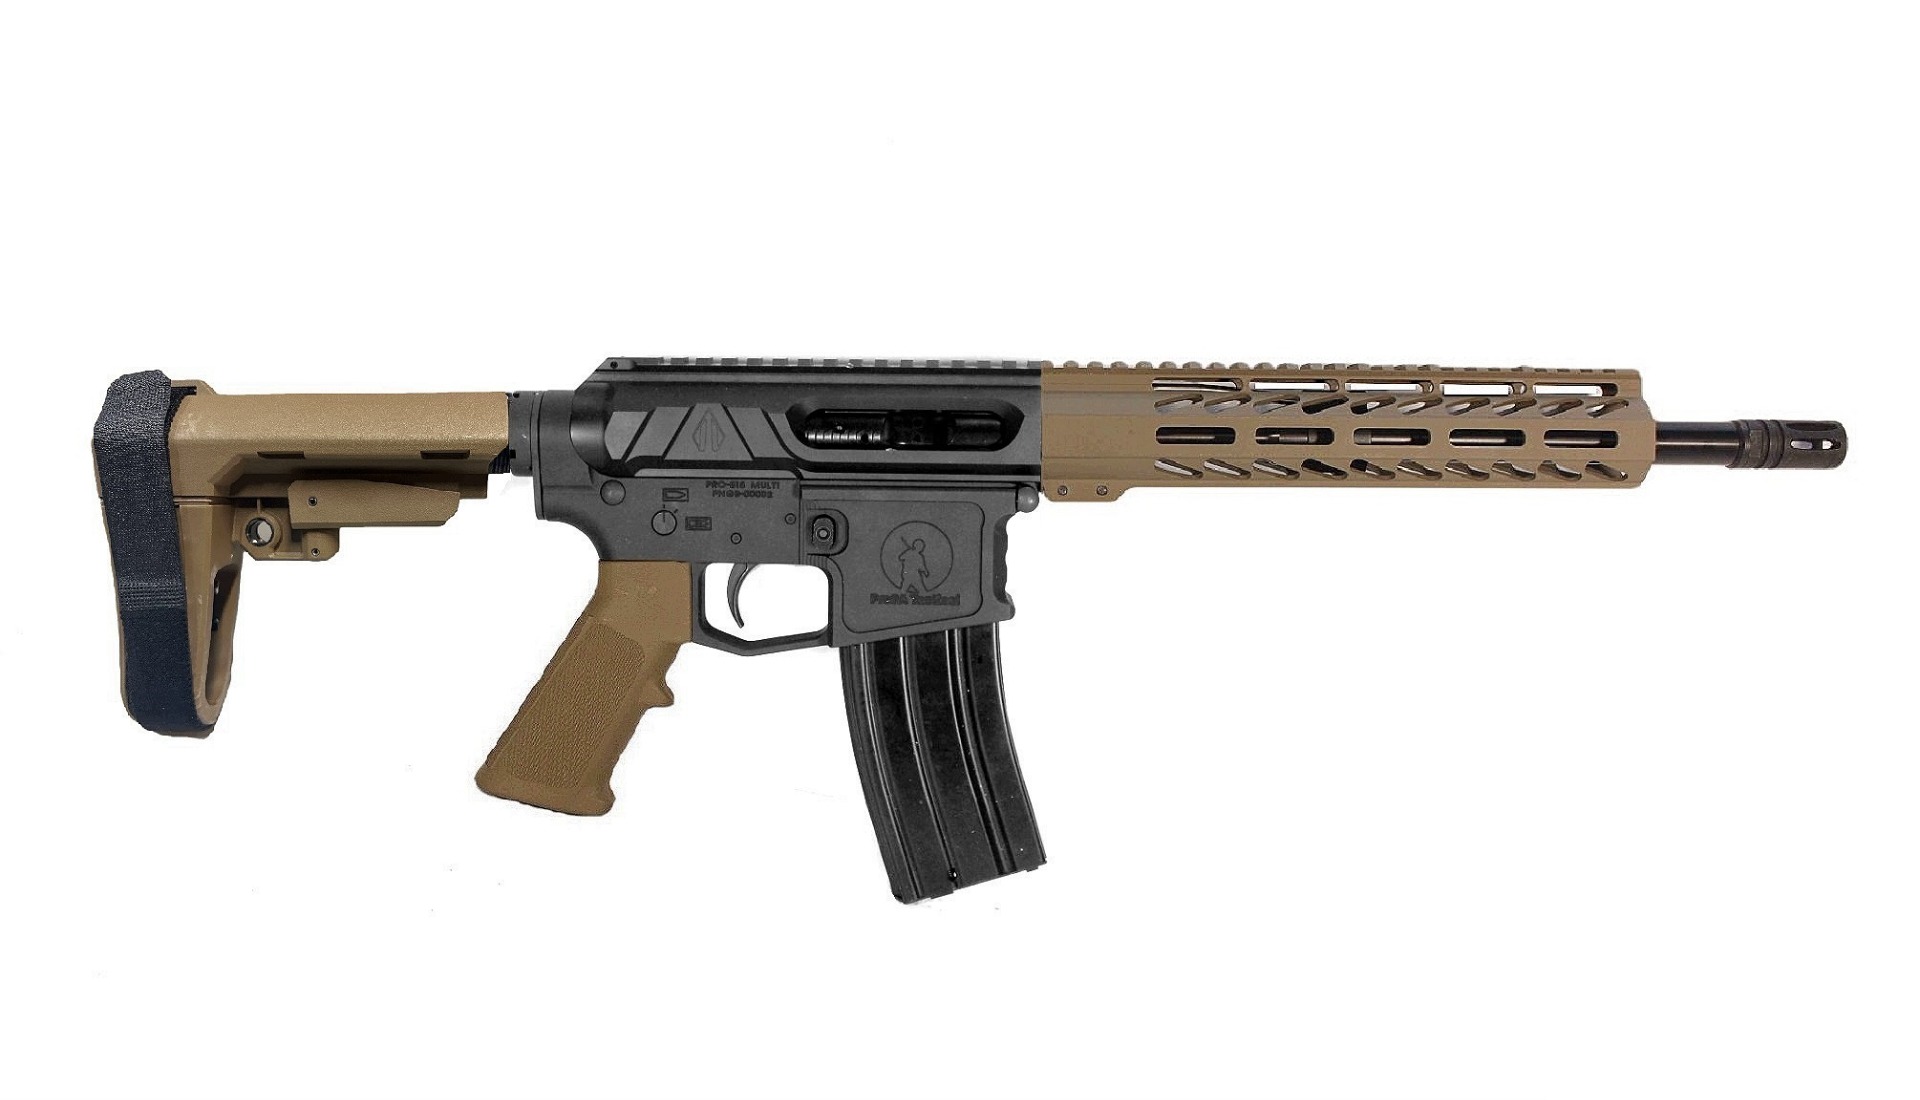 12.5" 300BLK Valiant Premium AR15 Pistol 